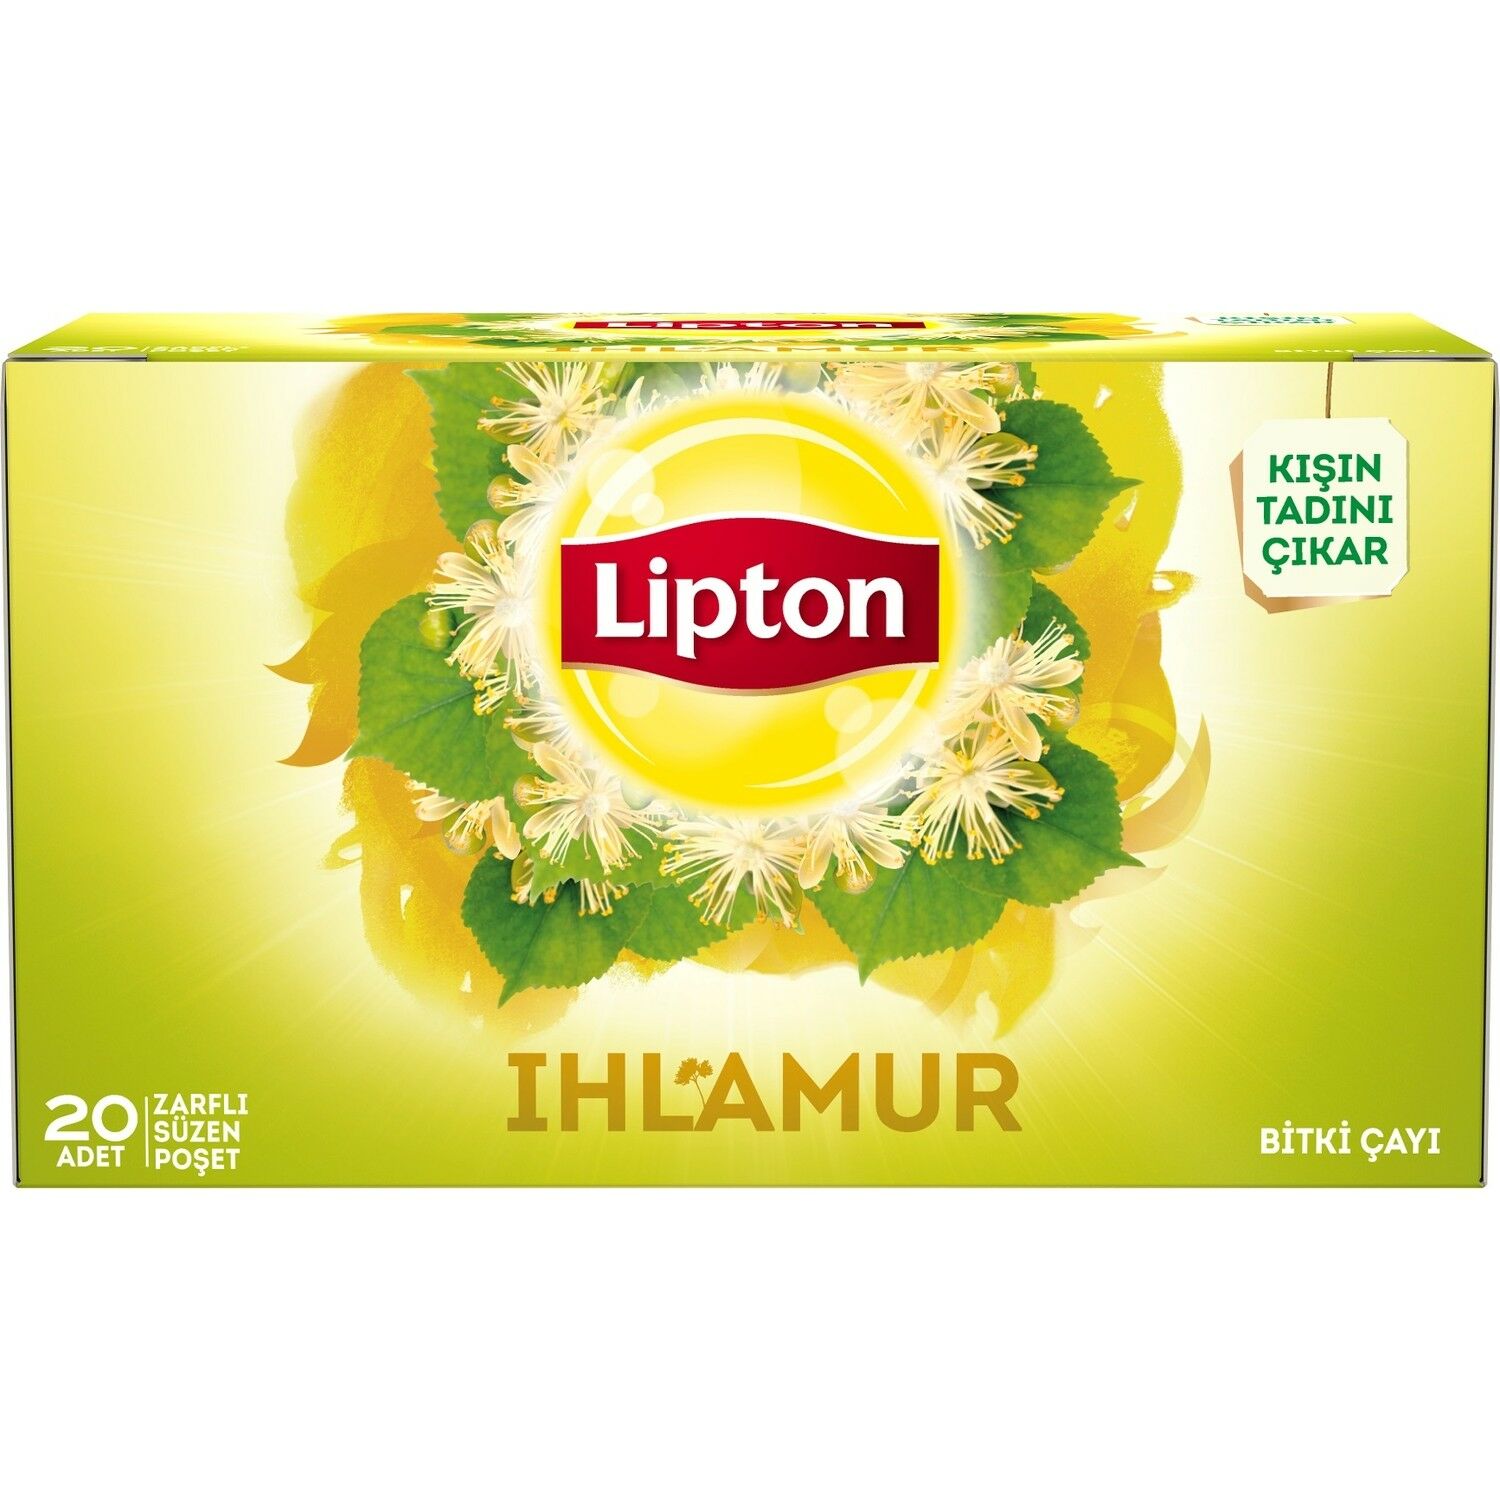 Lipton Bitki Çayı Ihlamur 1,5grx20 Adet